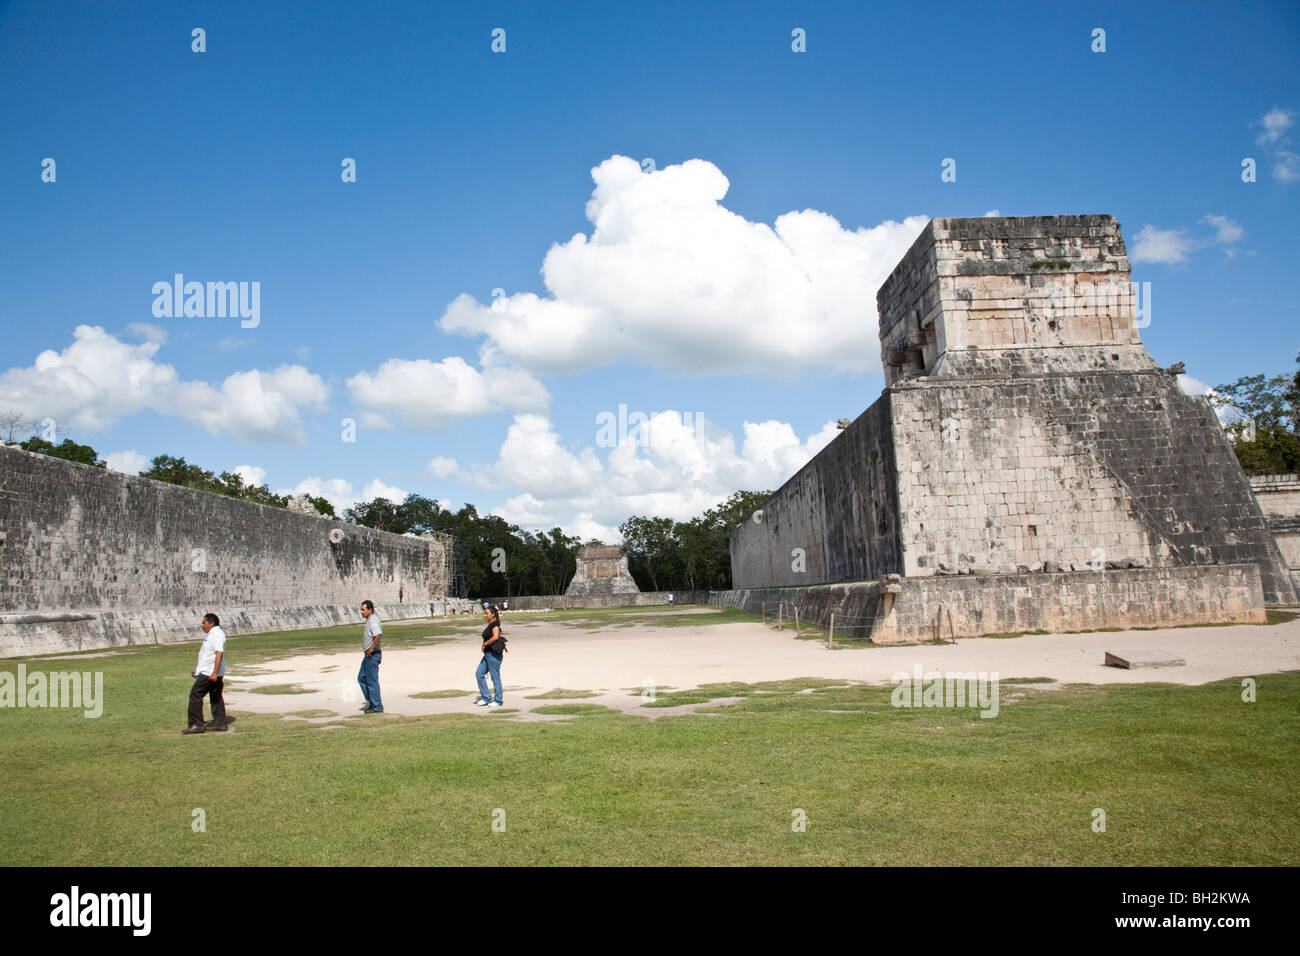 The Ball Court of Chichen Itza. Chichen Itza Archaeological Site Yucatan Mexico. Stock Photo